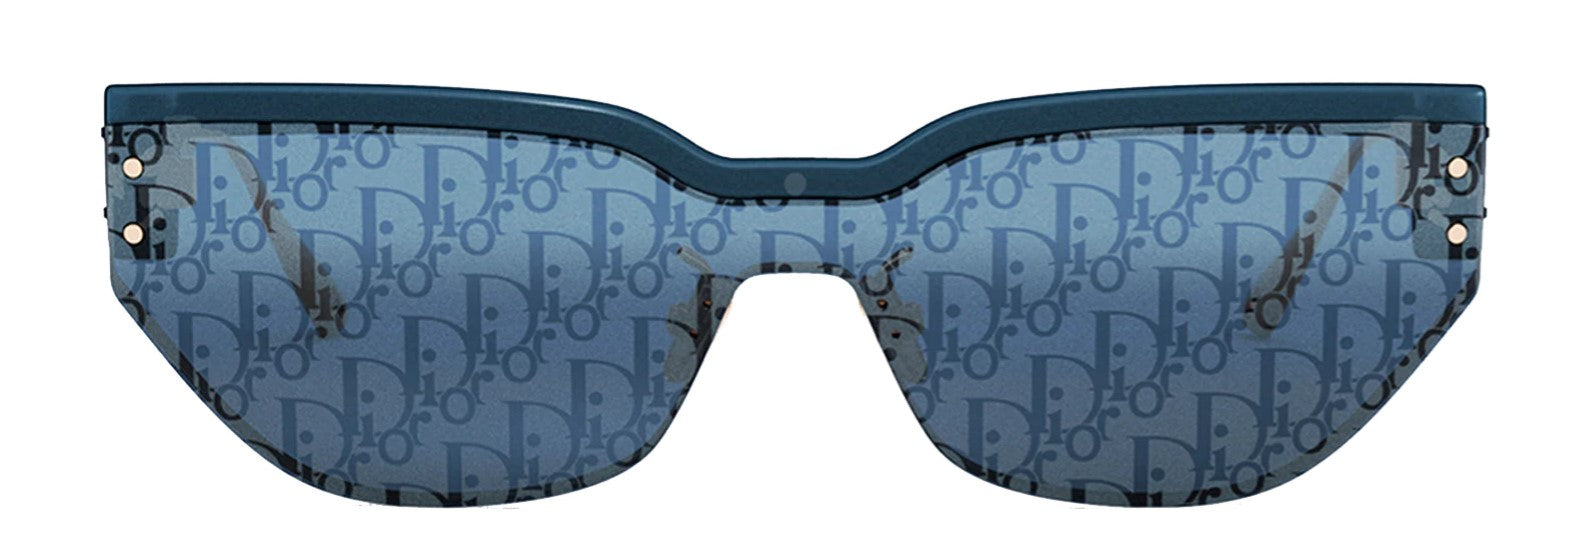 Gucci Monogram Acetate Cat-eye Sunglasses in Blue